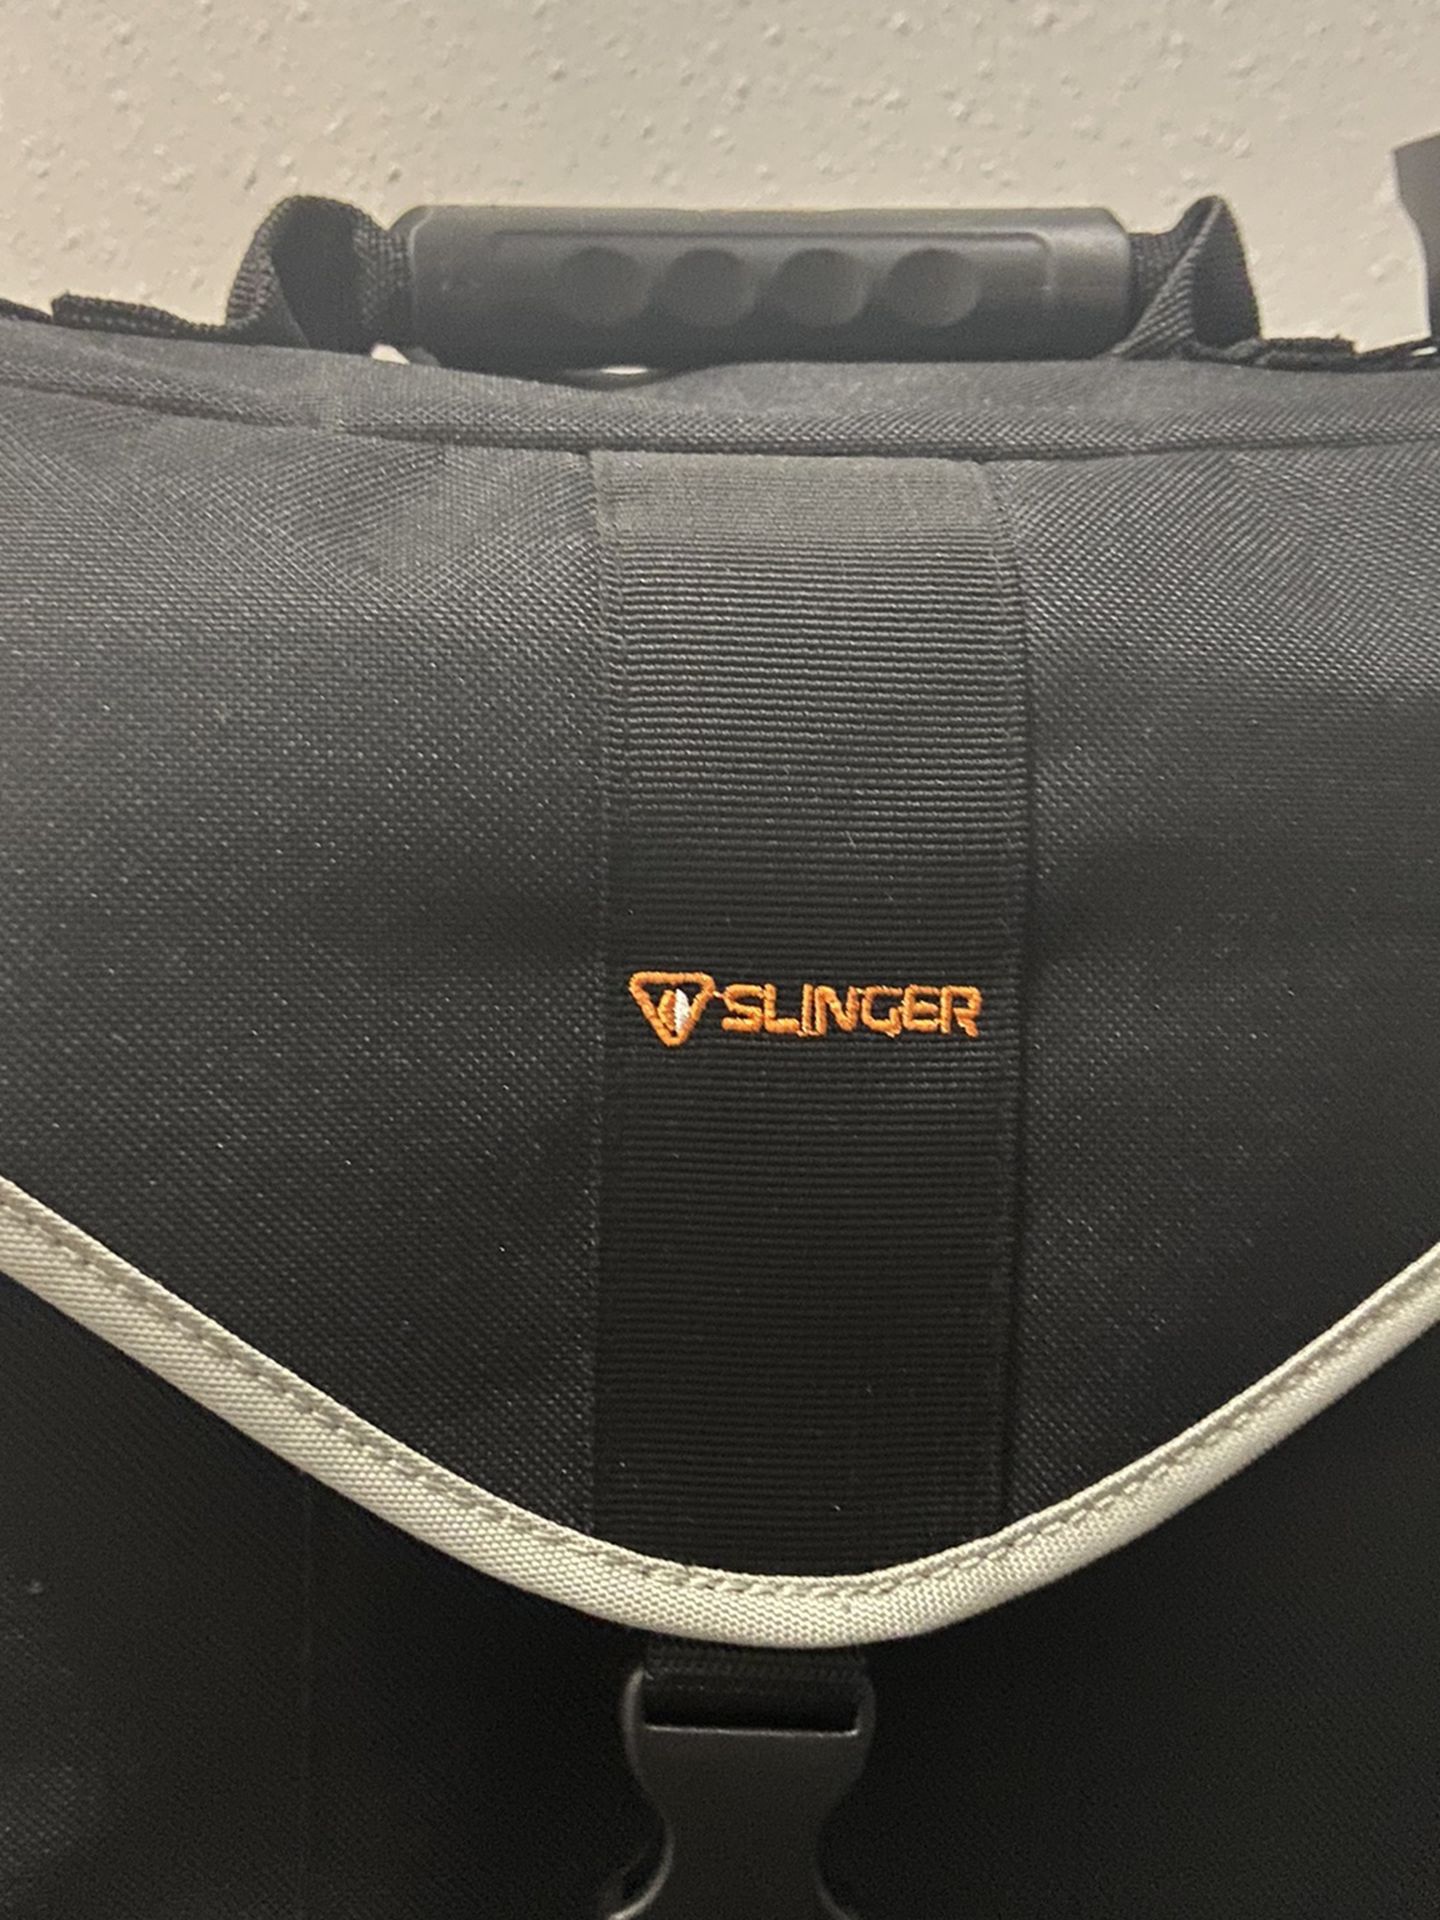 Slinger camera Bag